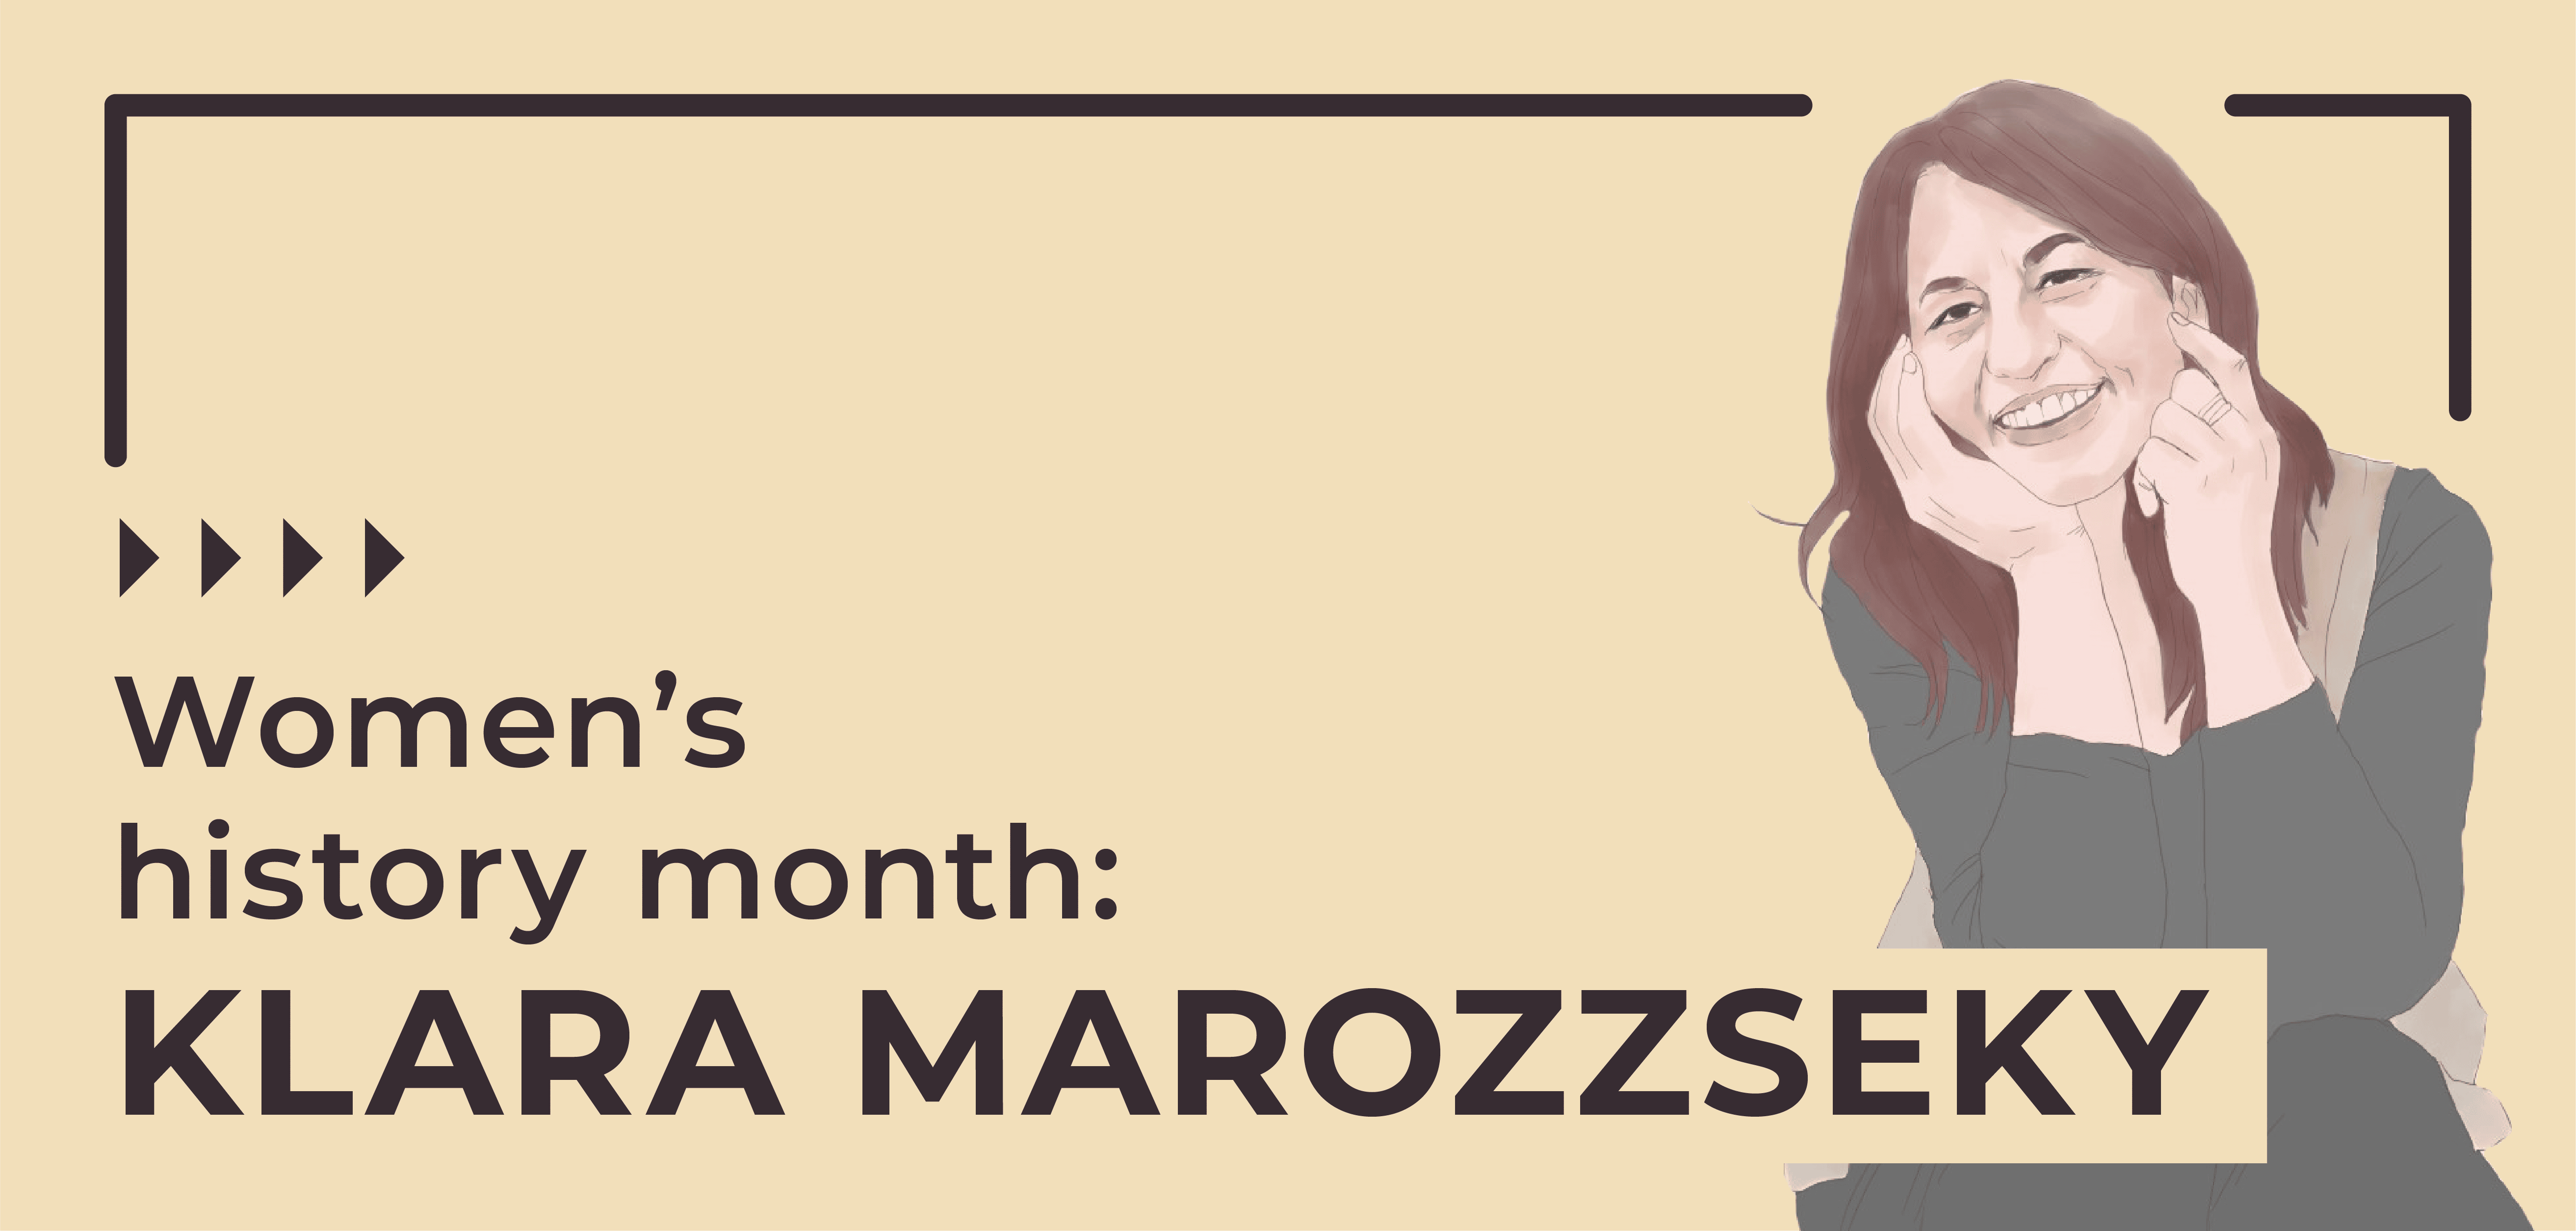 Womens History Month Klara Marrozzseky